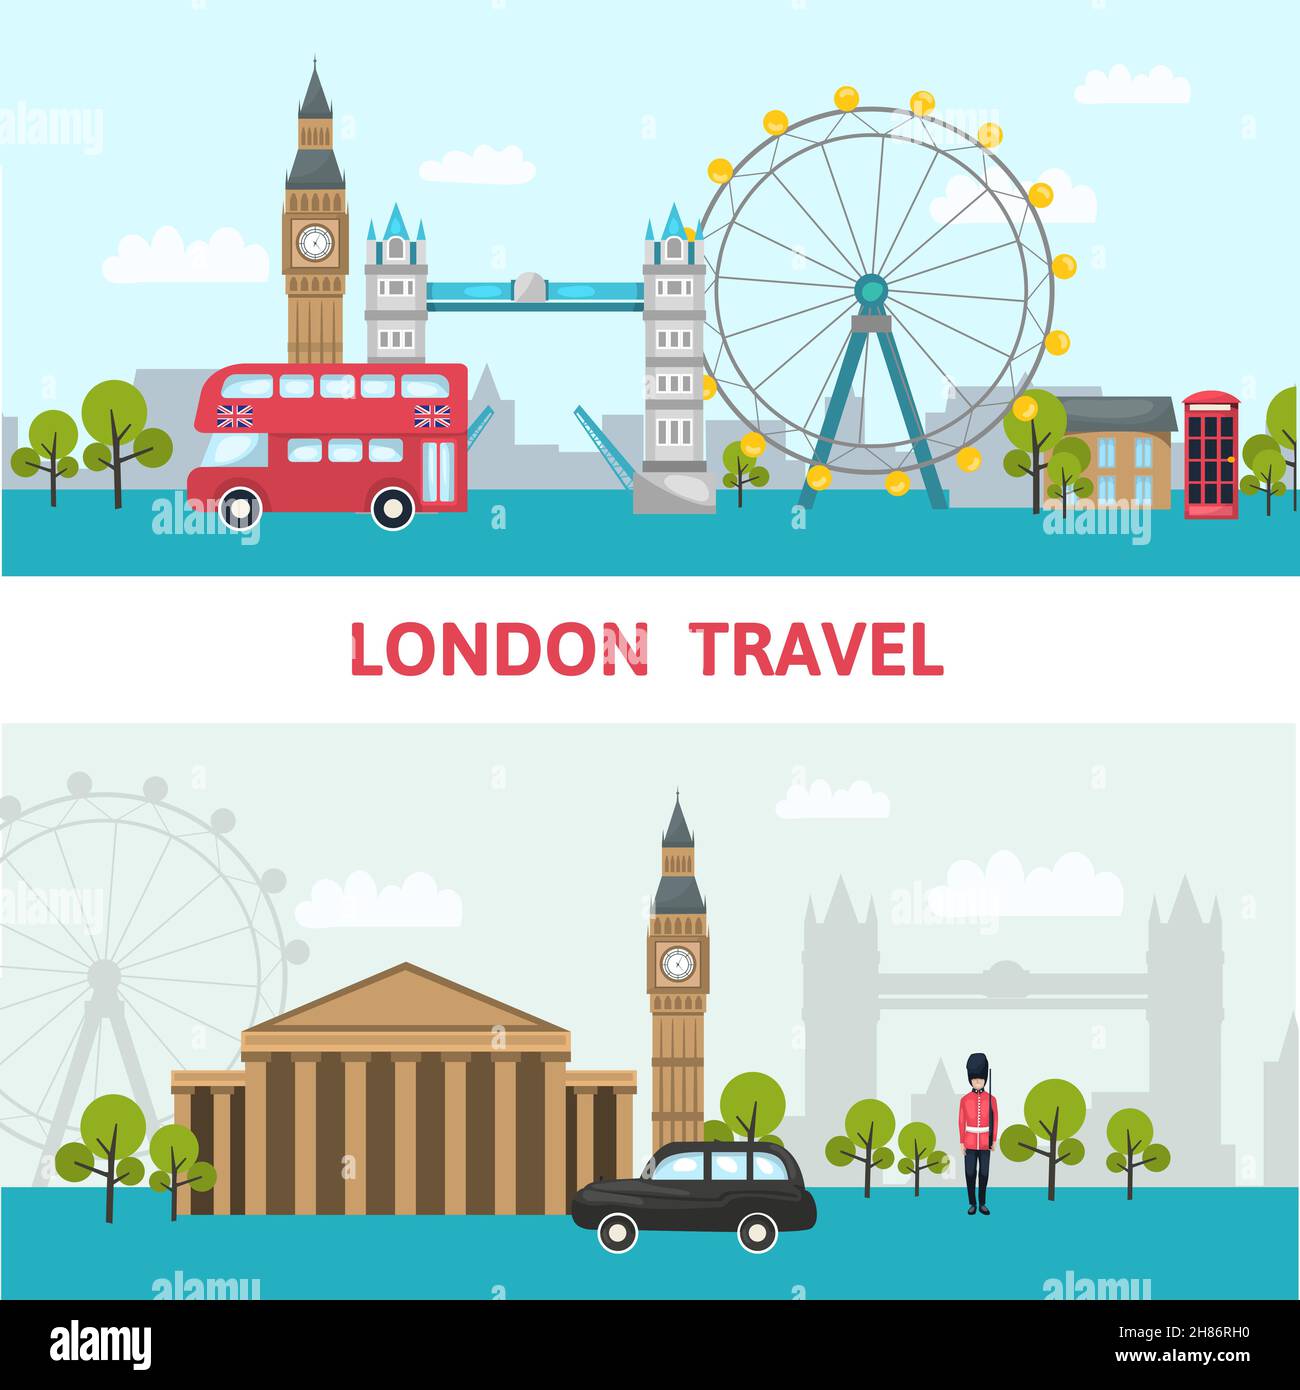 Affiche sur les gratte-ciel de Londres avec les principaux sites et voyages de Londres de l'illustration city vector Illustration de Vecteur